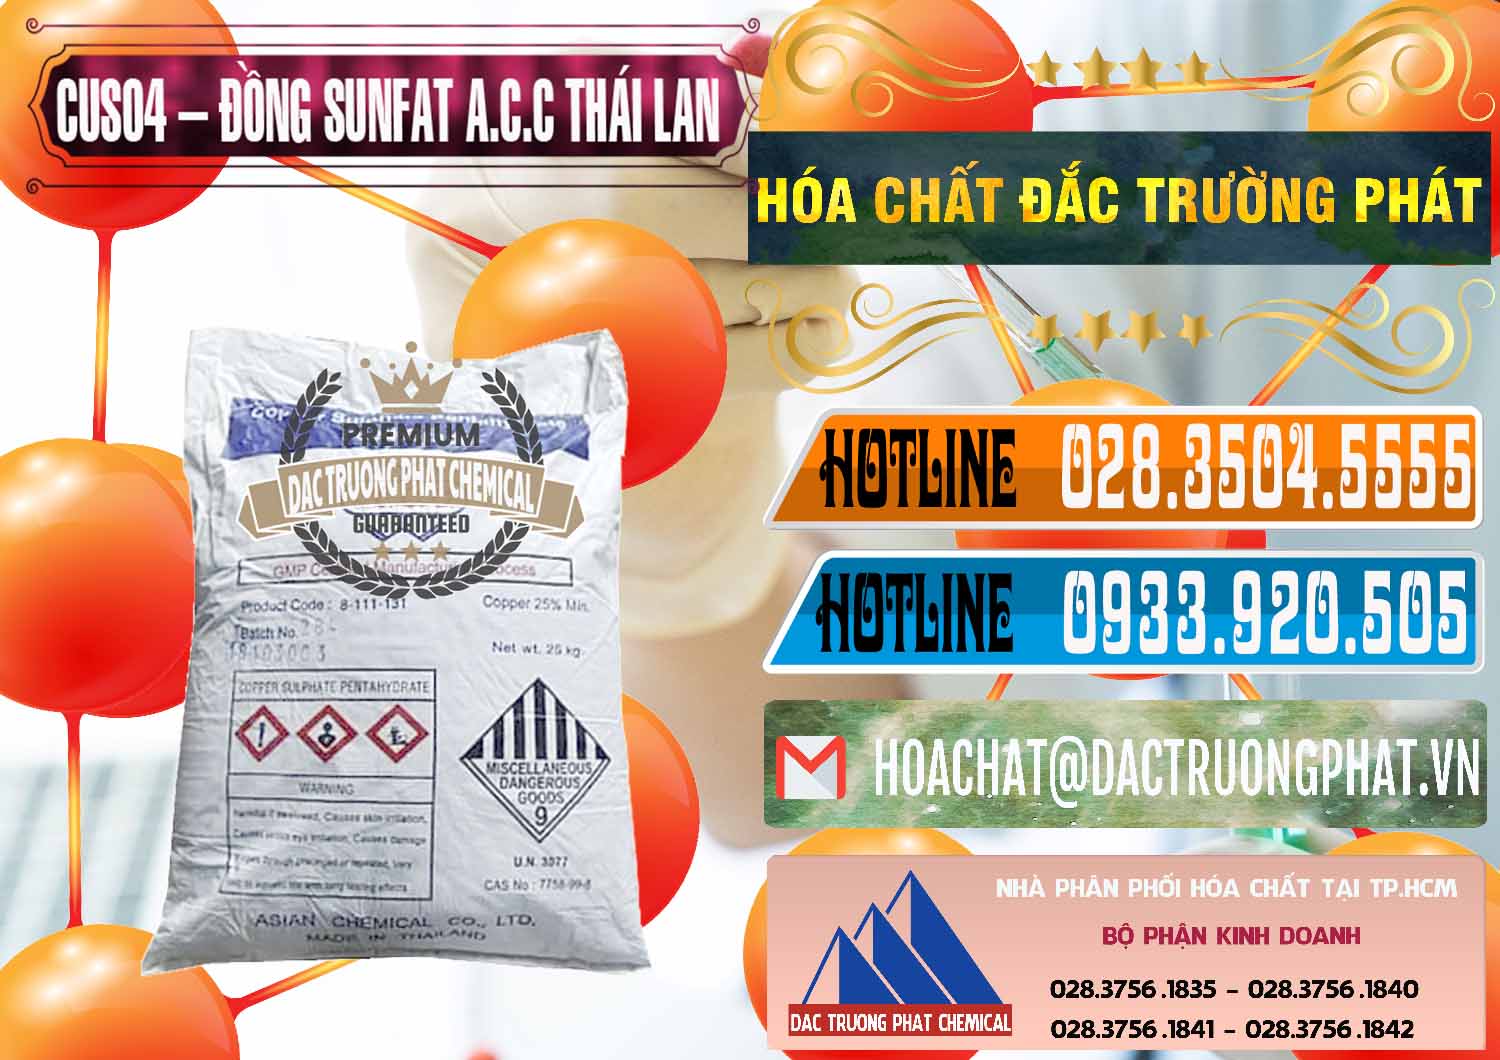 Công ty bán ( phân phối ) CuSO4 – Đồng Sunfat A.C.C Thái Lan - 0249 - Nơi chuyên kinh doanh & cung cấp hóa chất tại TP.HCM - stmp.net